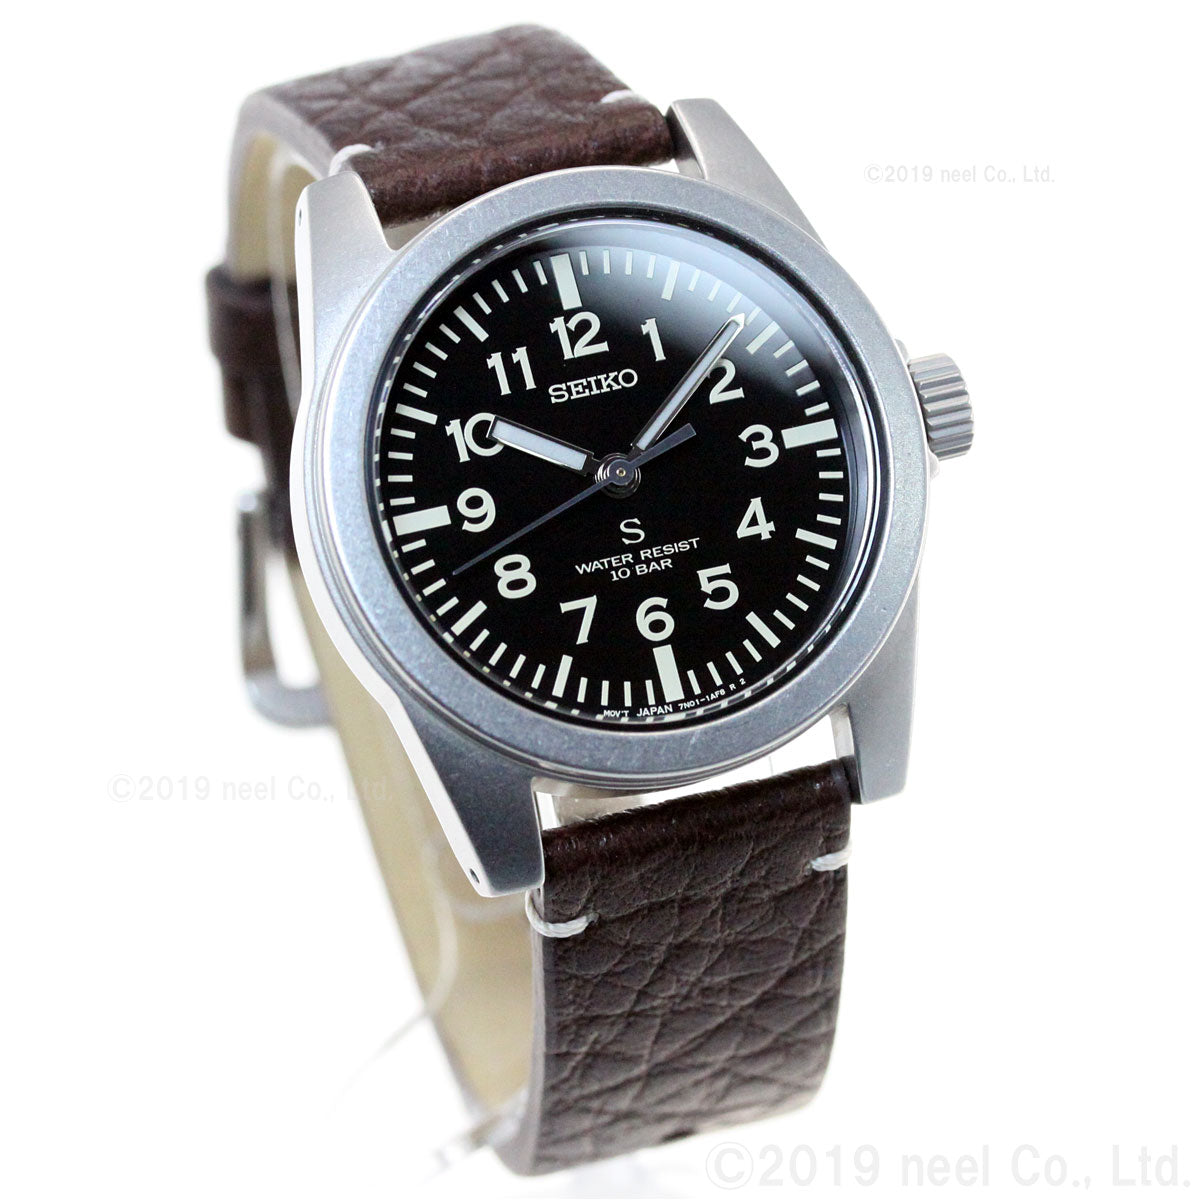 セイコー セレクション SEIKO SELECTION SCXP171 復刻モデル 流通限定モデル 腕時計 メンズ ナノユニバース